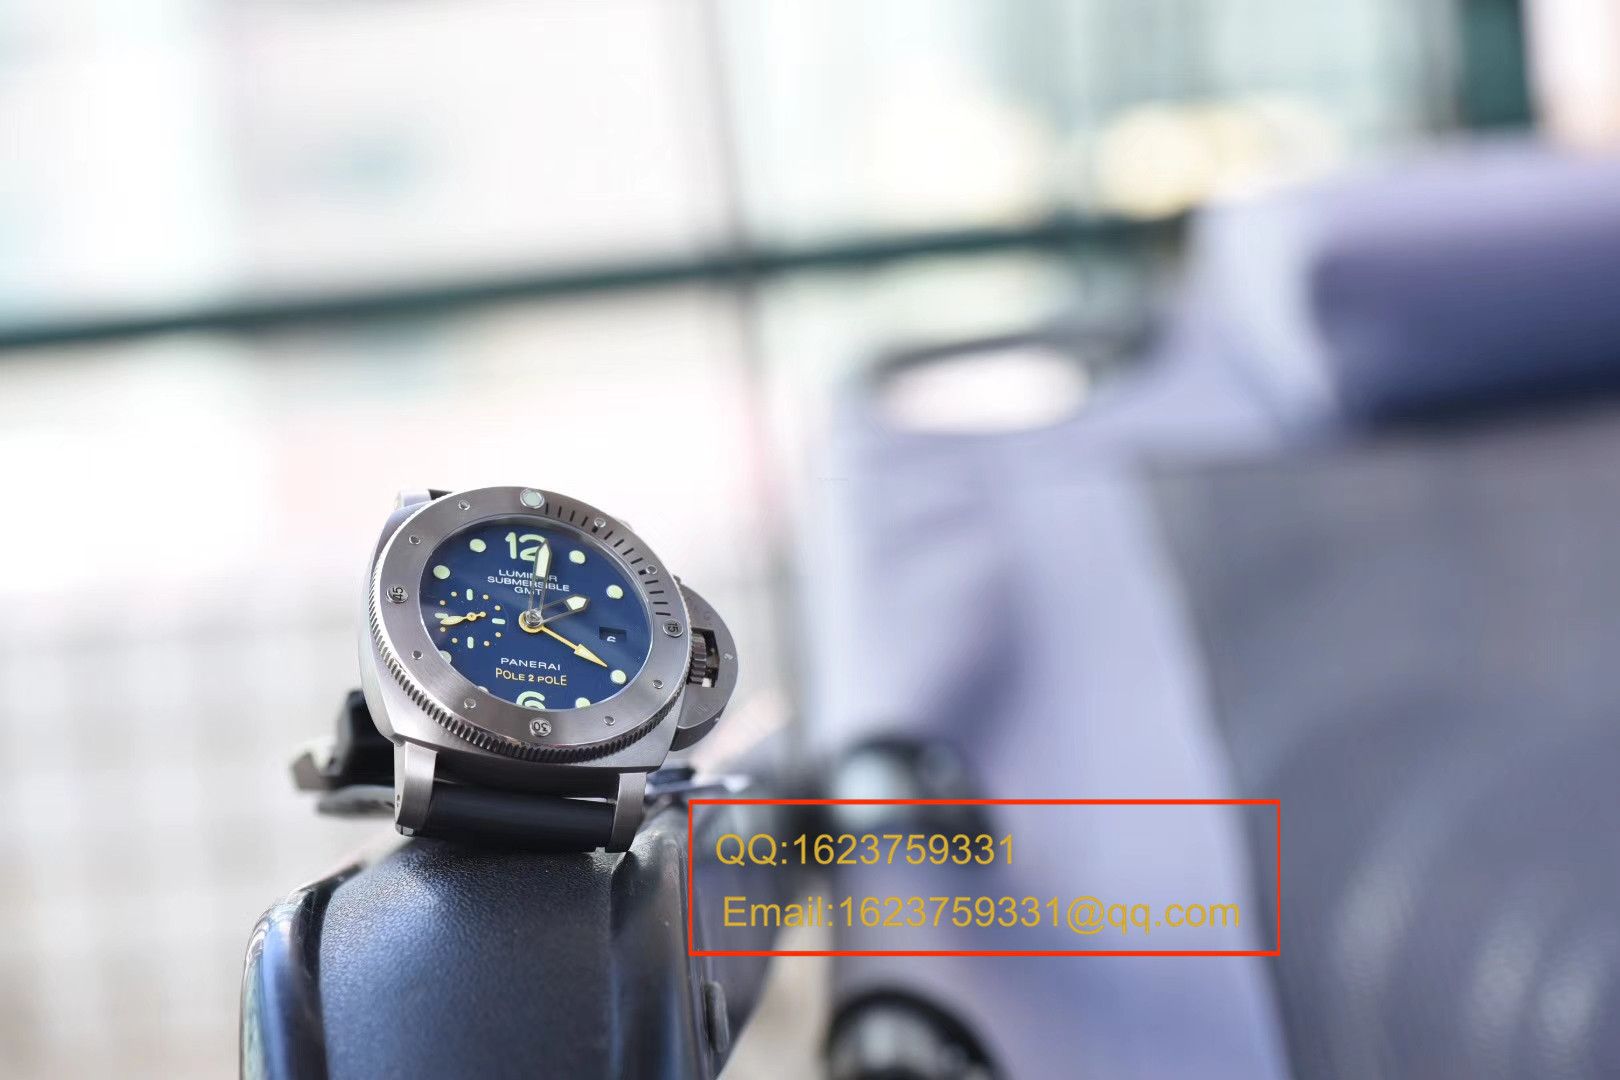 视频评测沛纳海特别版腕表系列PAM00719腕表【VS厂V2最高版本超A高仿手表】 